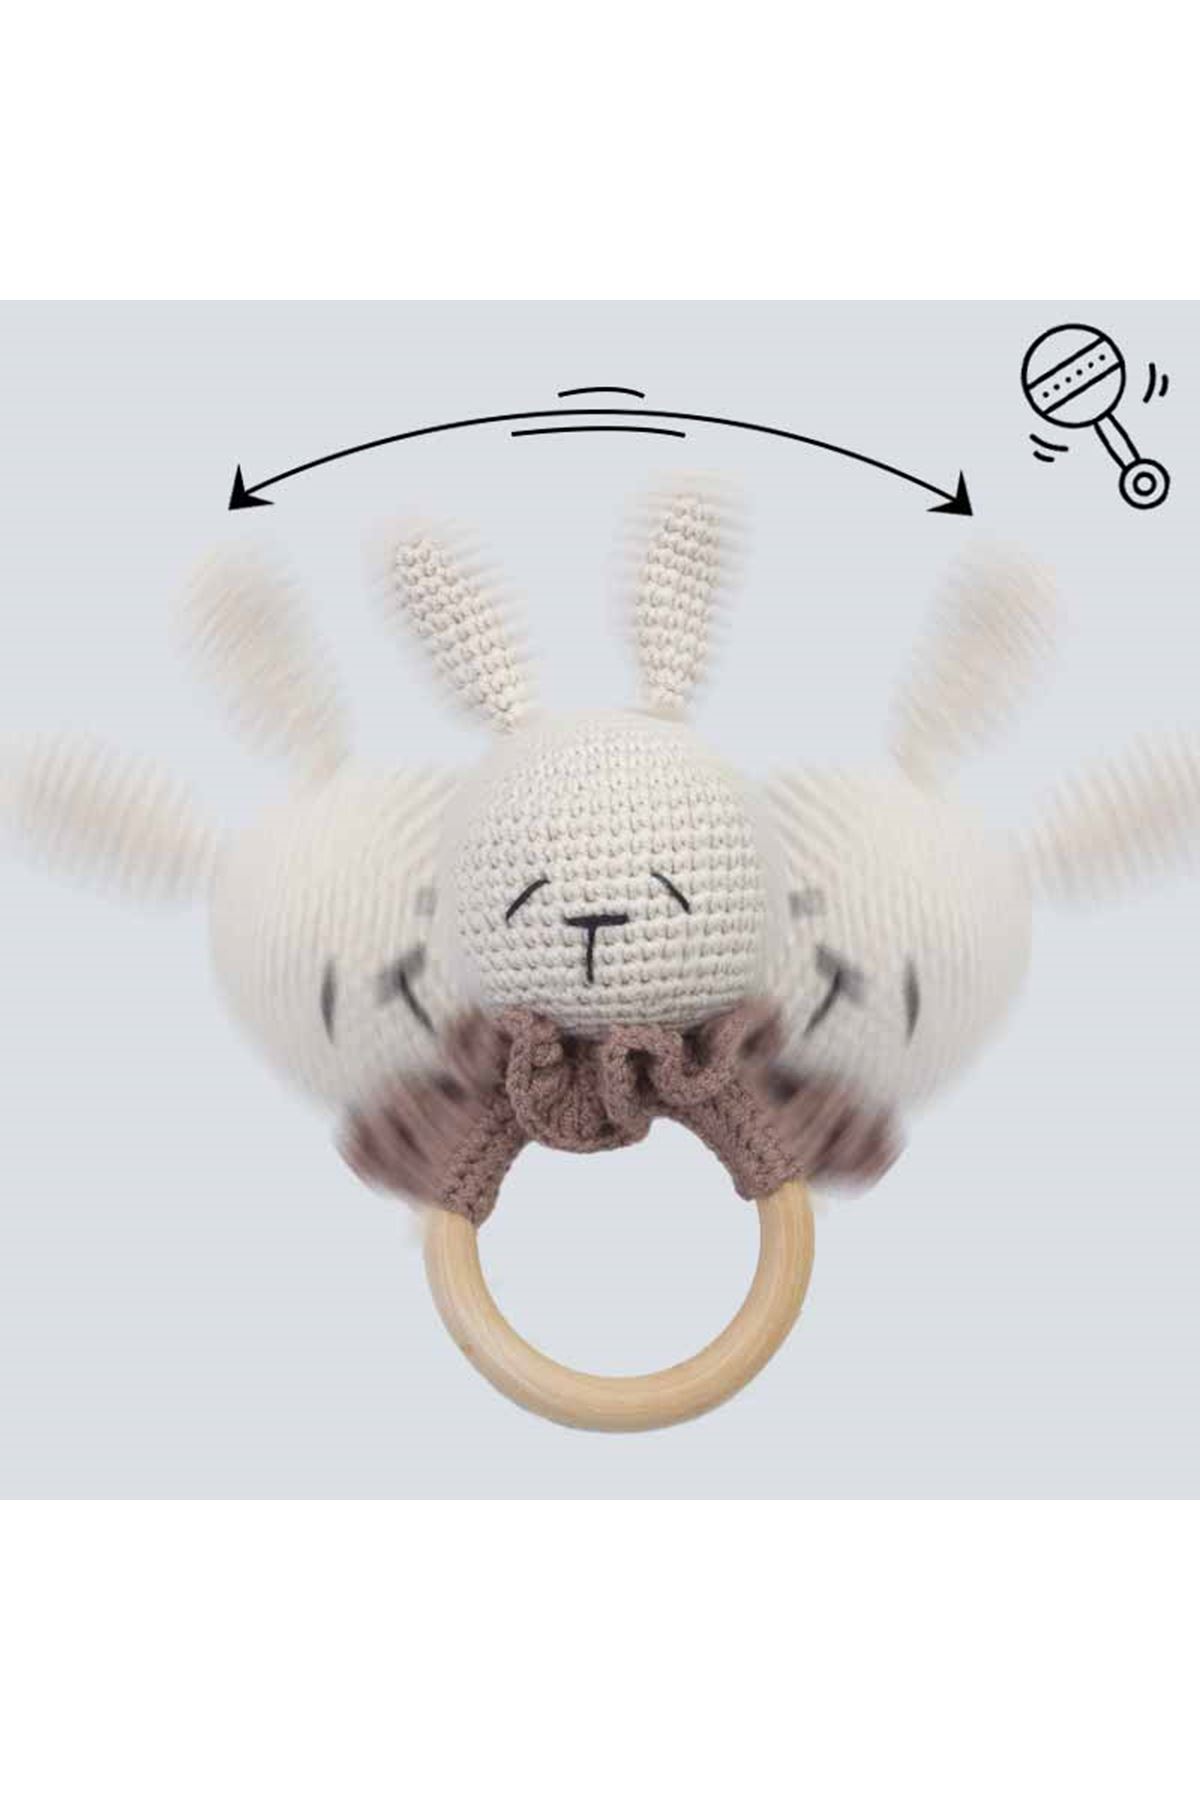 Krem Organik El Yapımı Amigurumi Tavşan Çıngırak Oyuncak